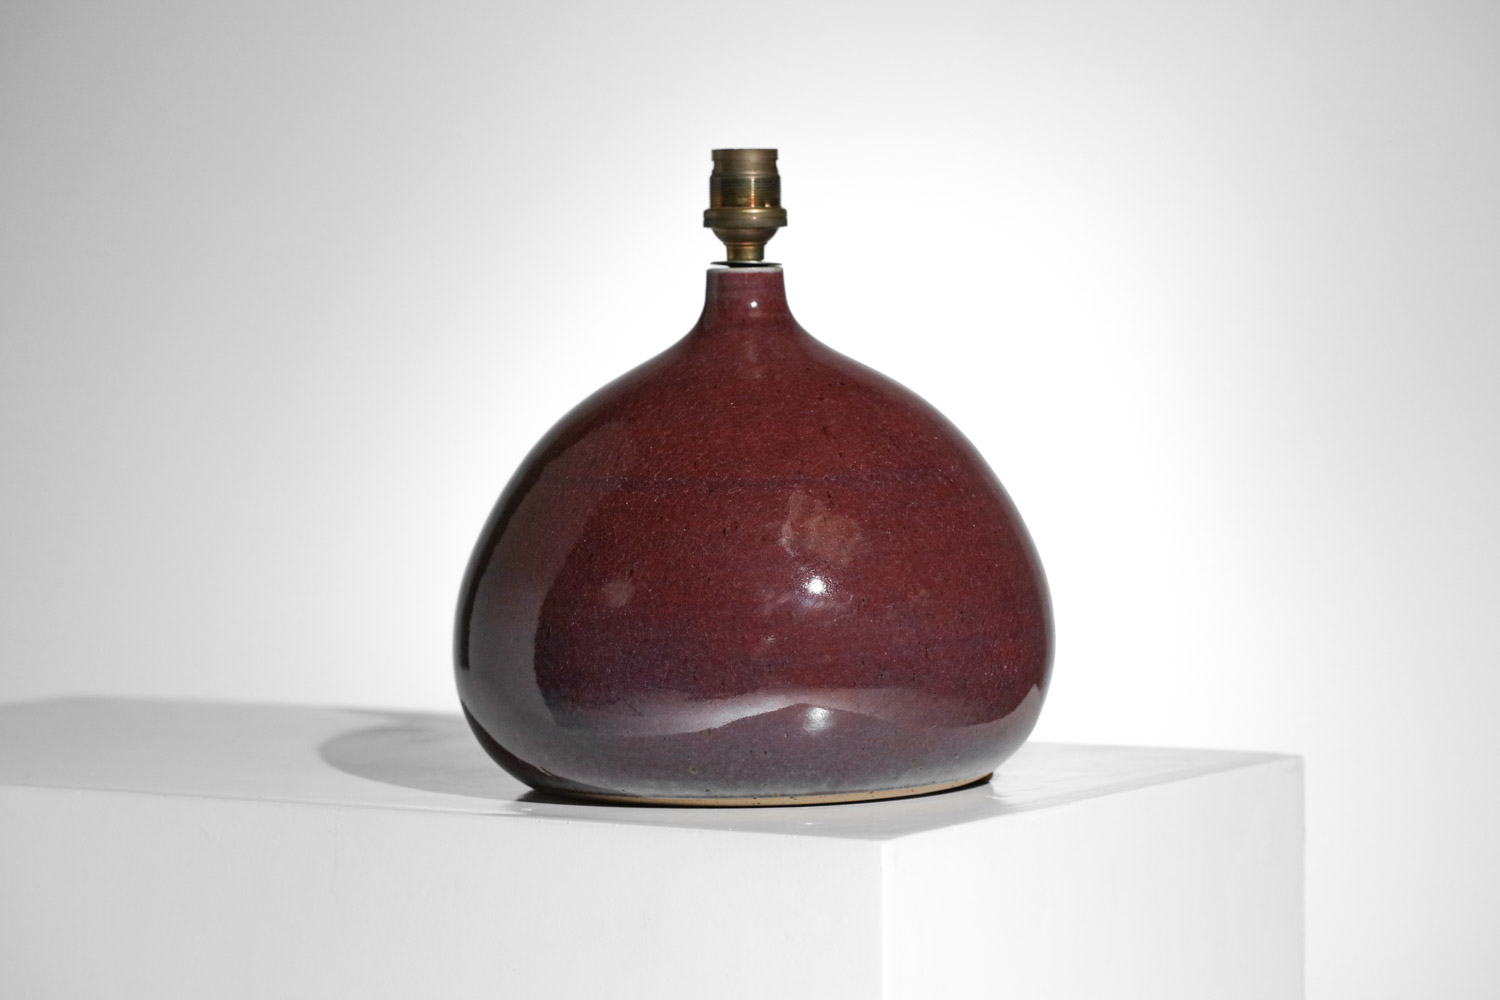 lampe de table en ceramique non identifié style ruelland - G870